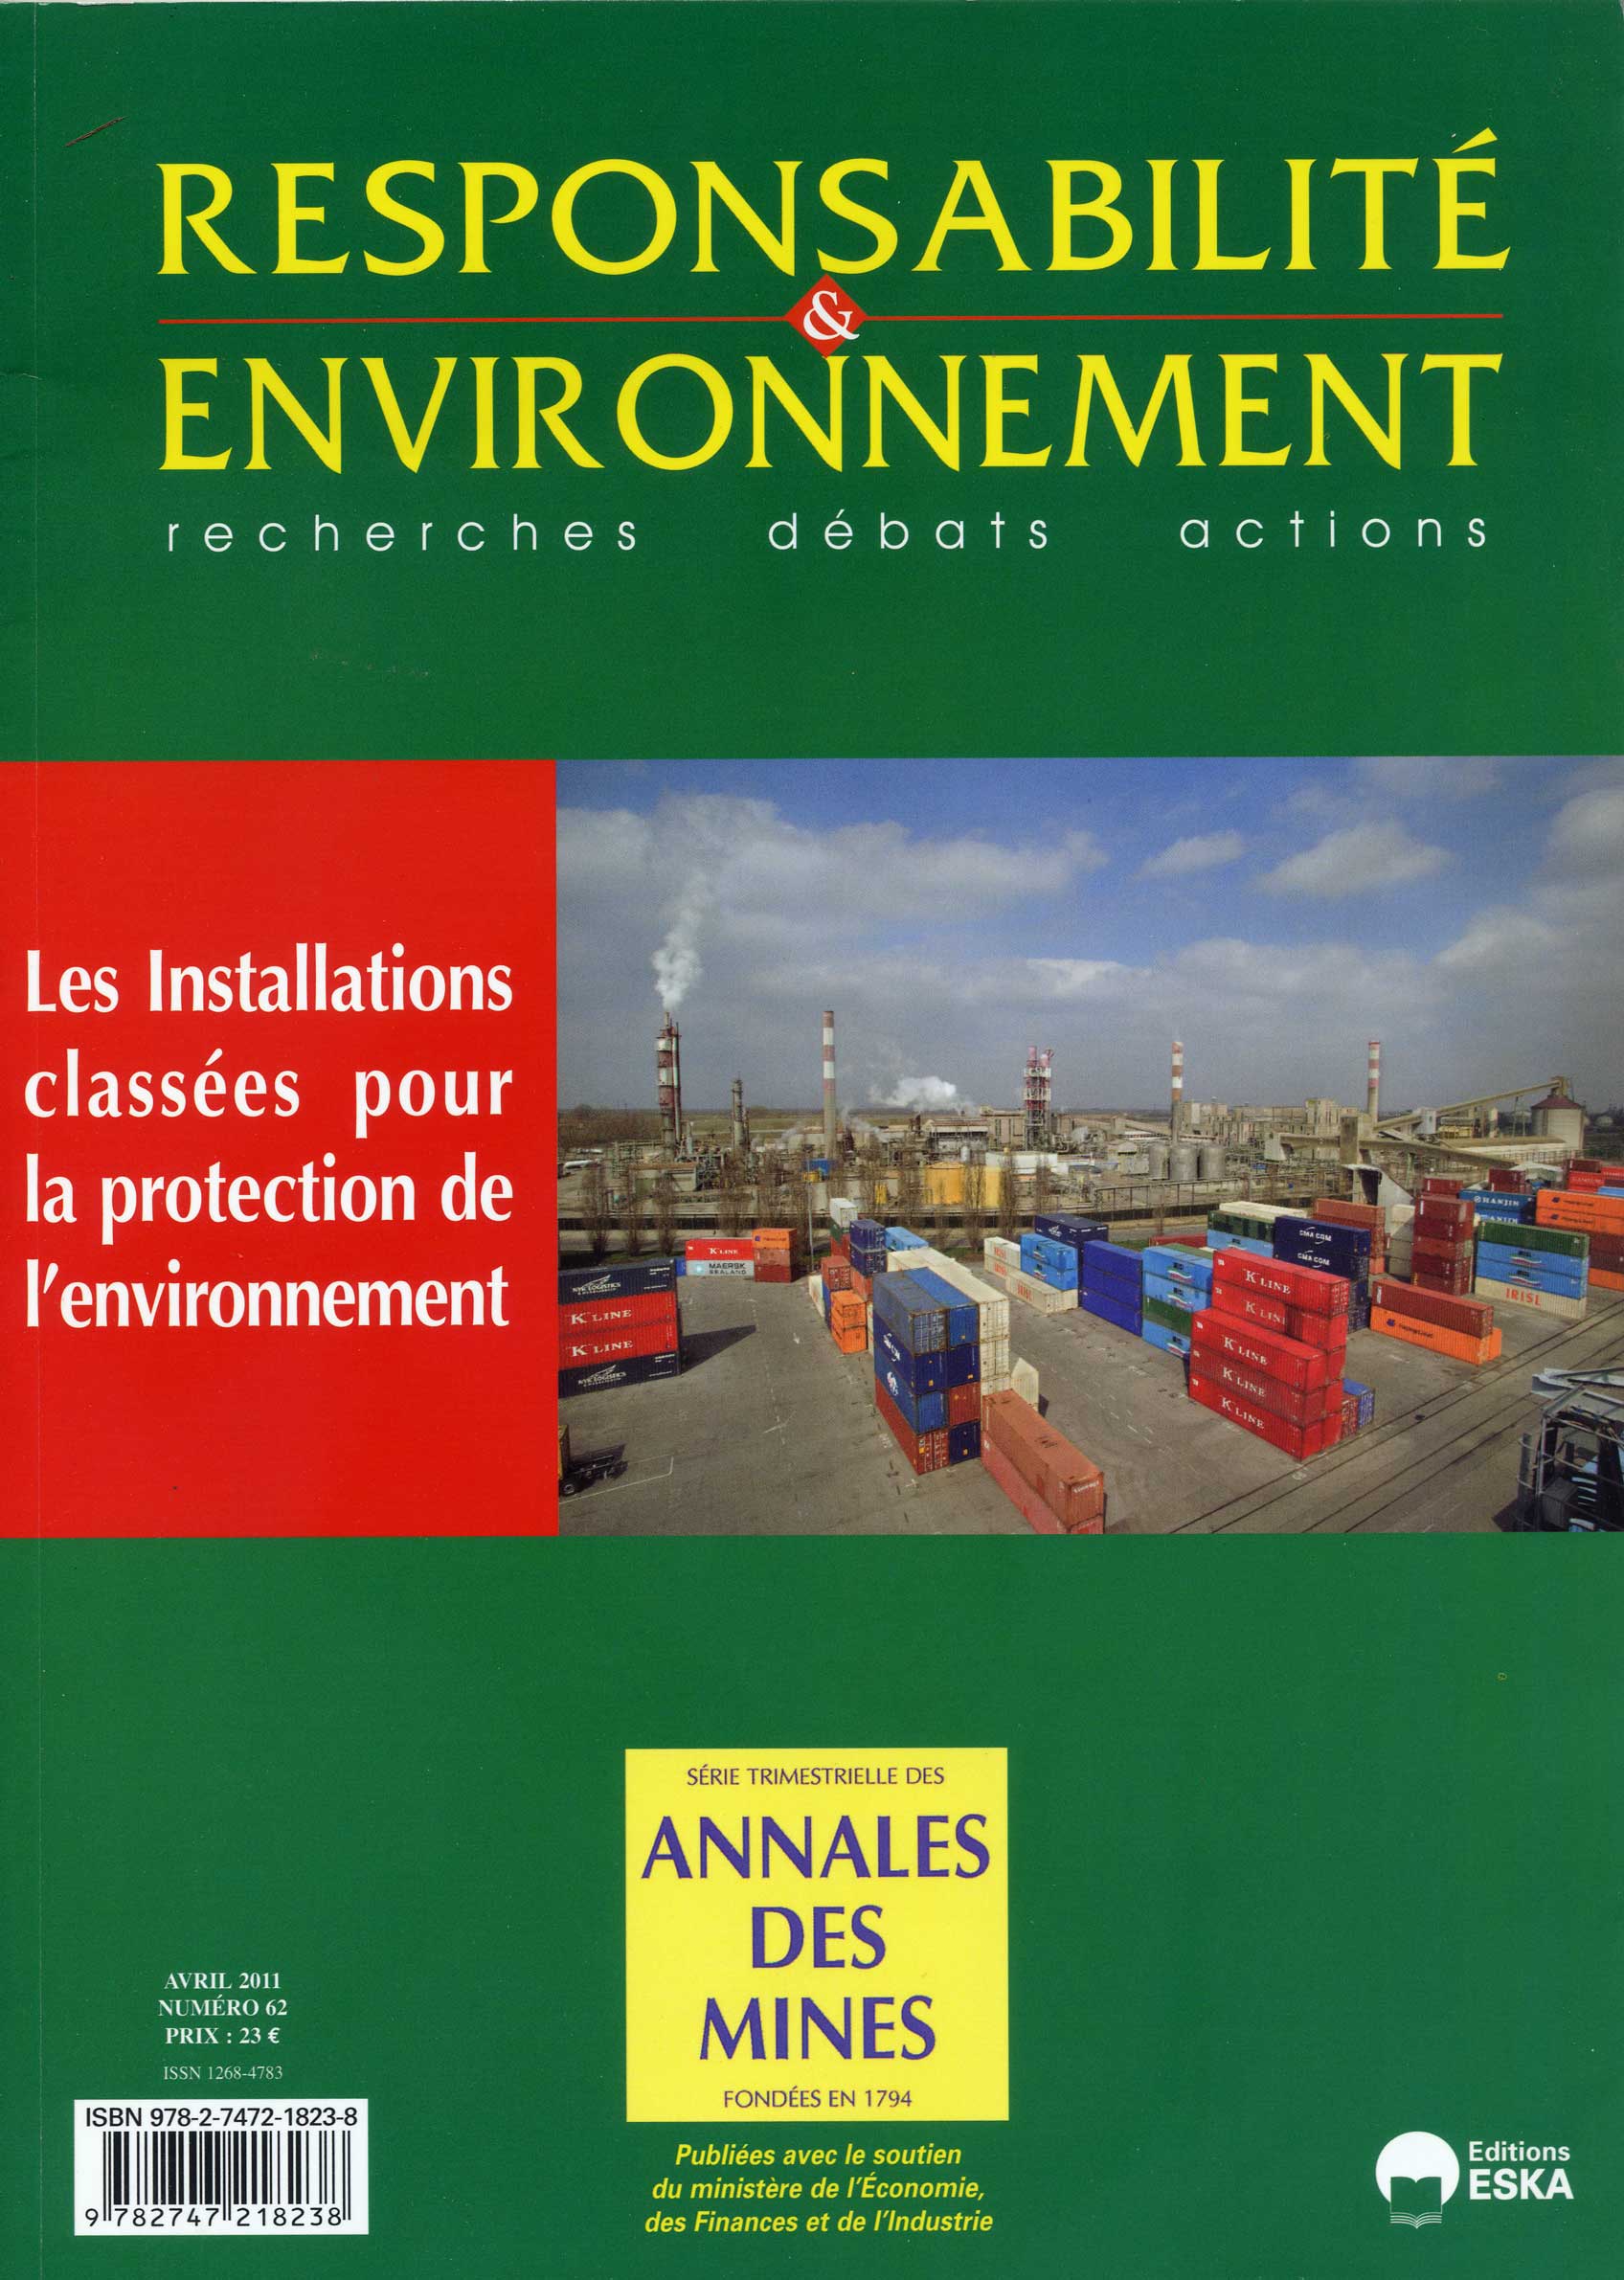 Les Installations classes pour la protection de l'environnement